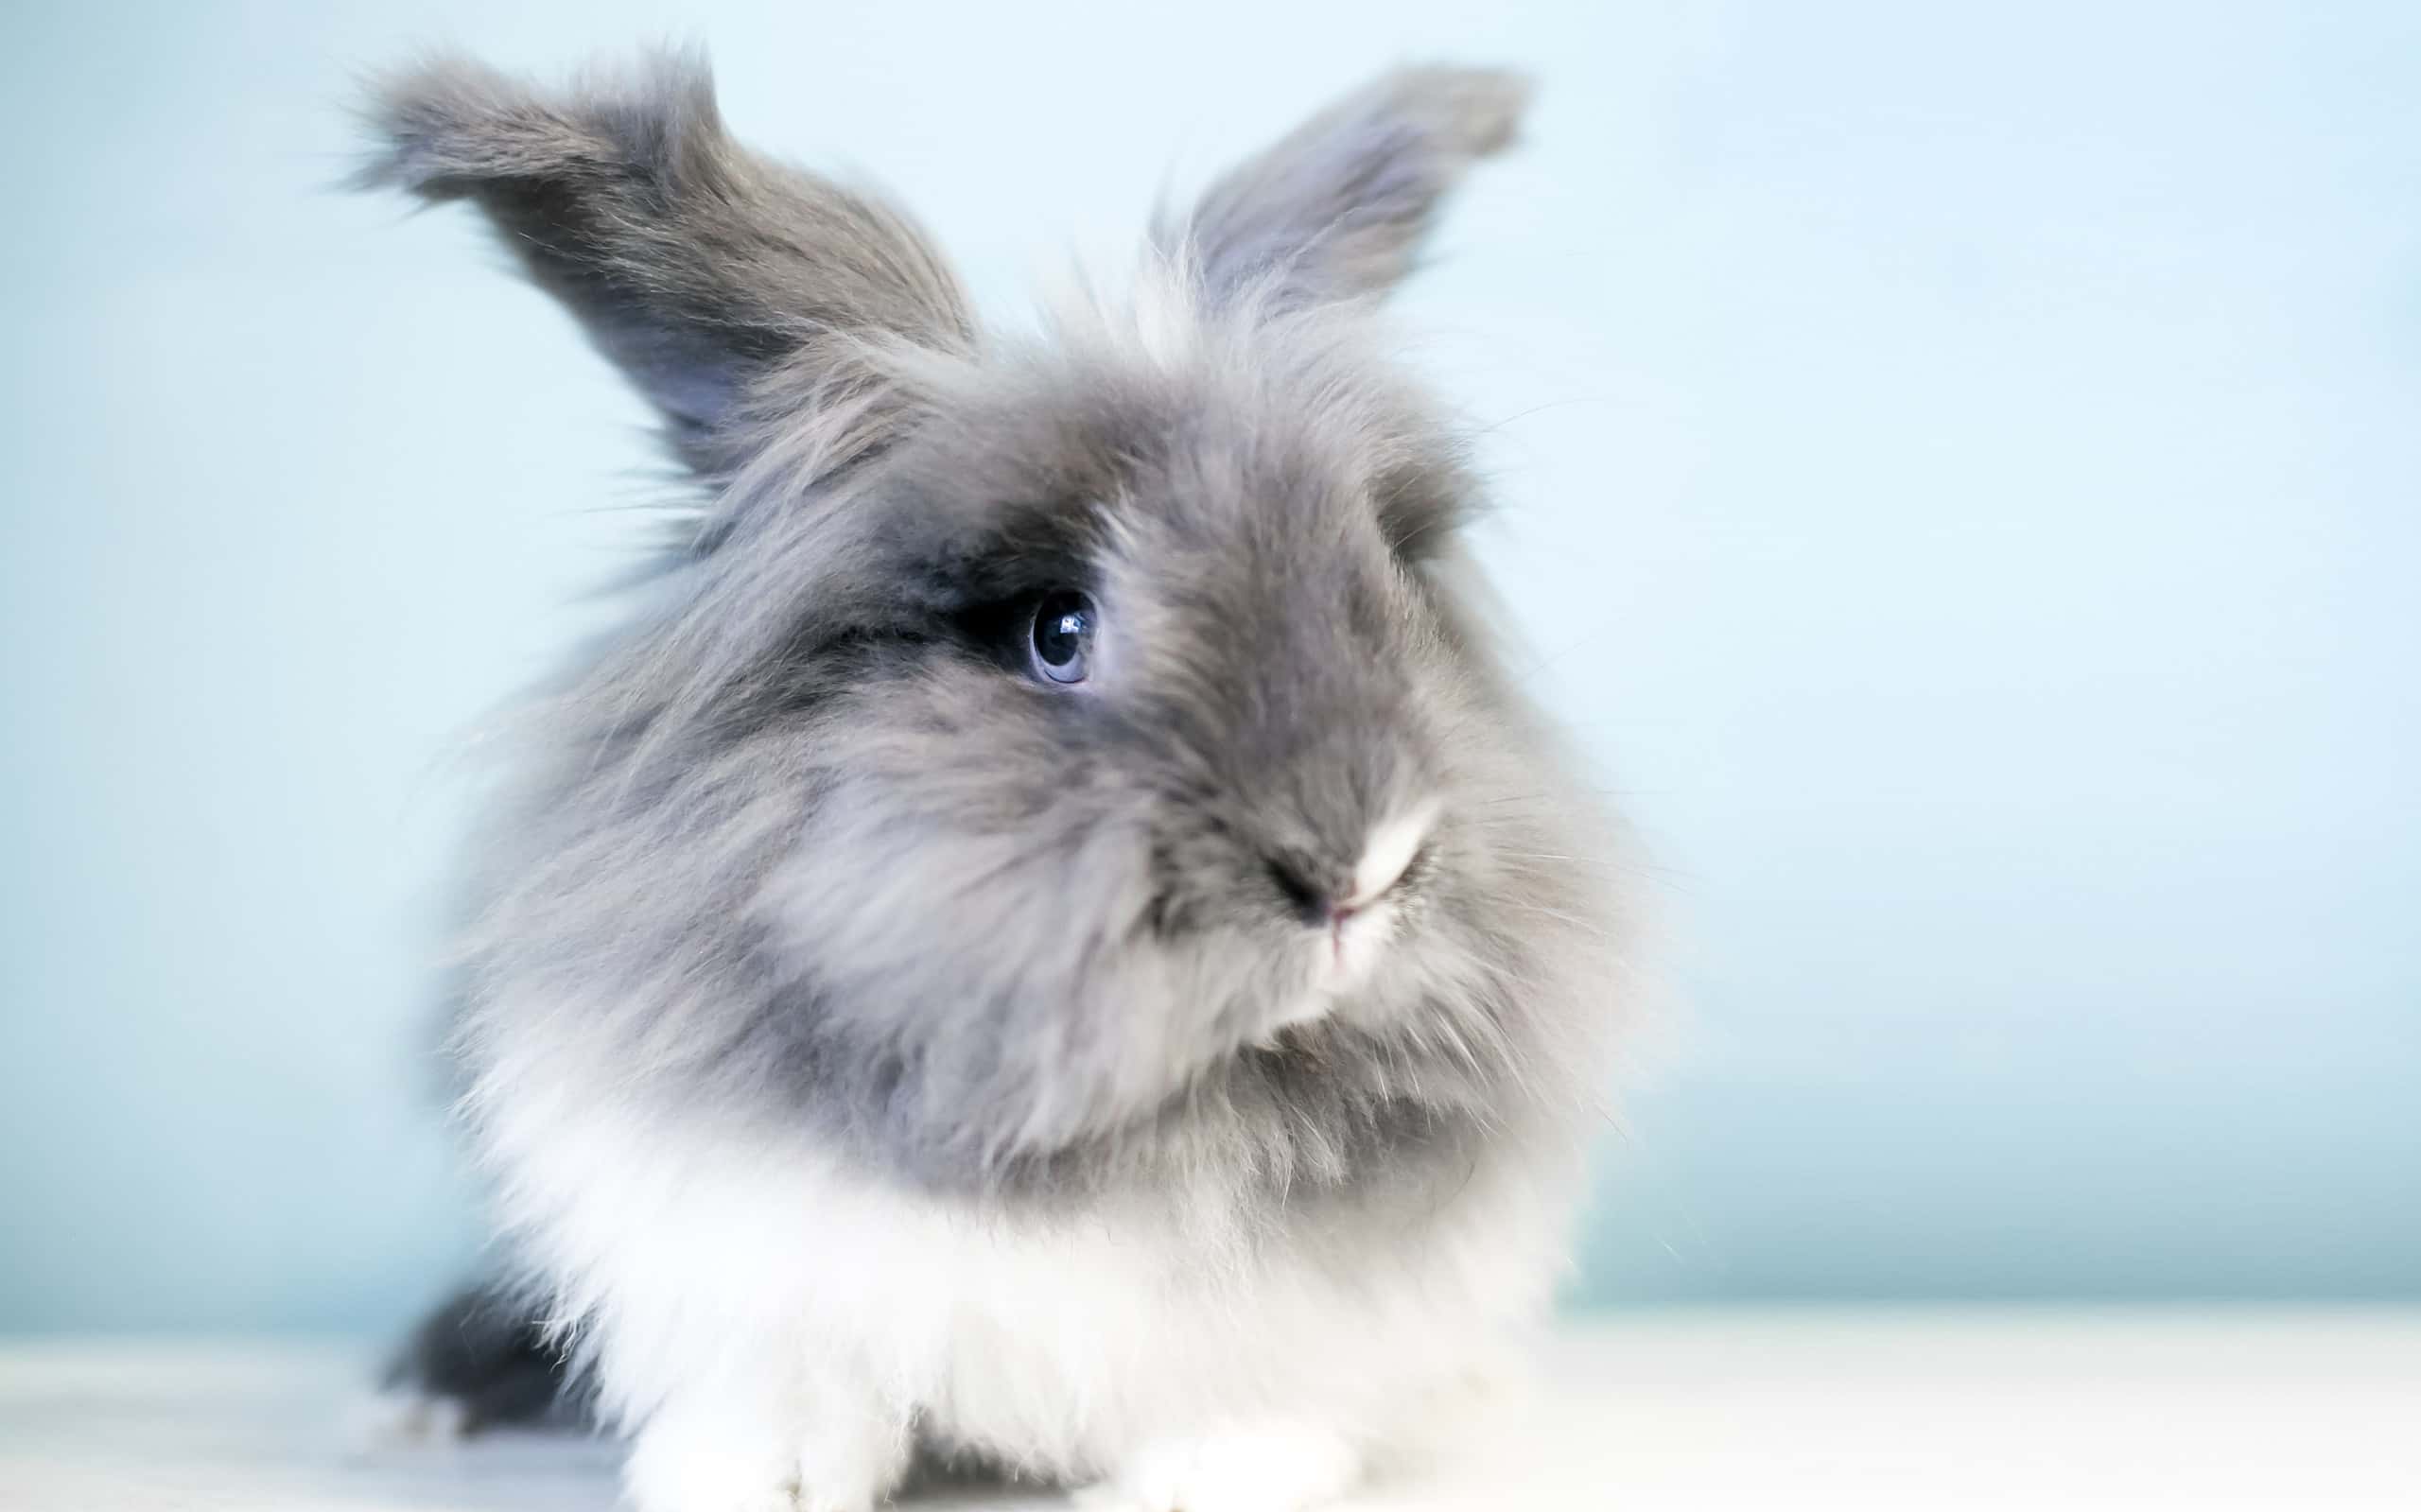 A fluffy Lionhead rabbit with blue eyes